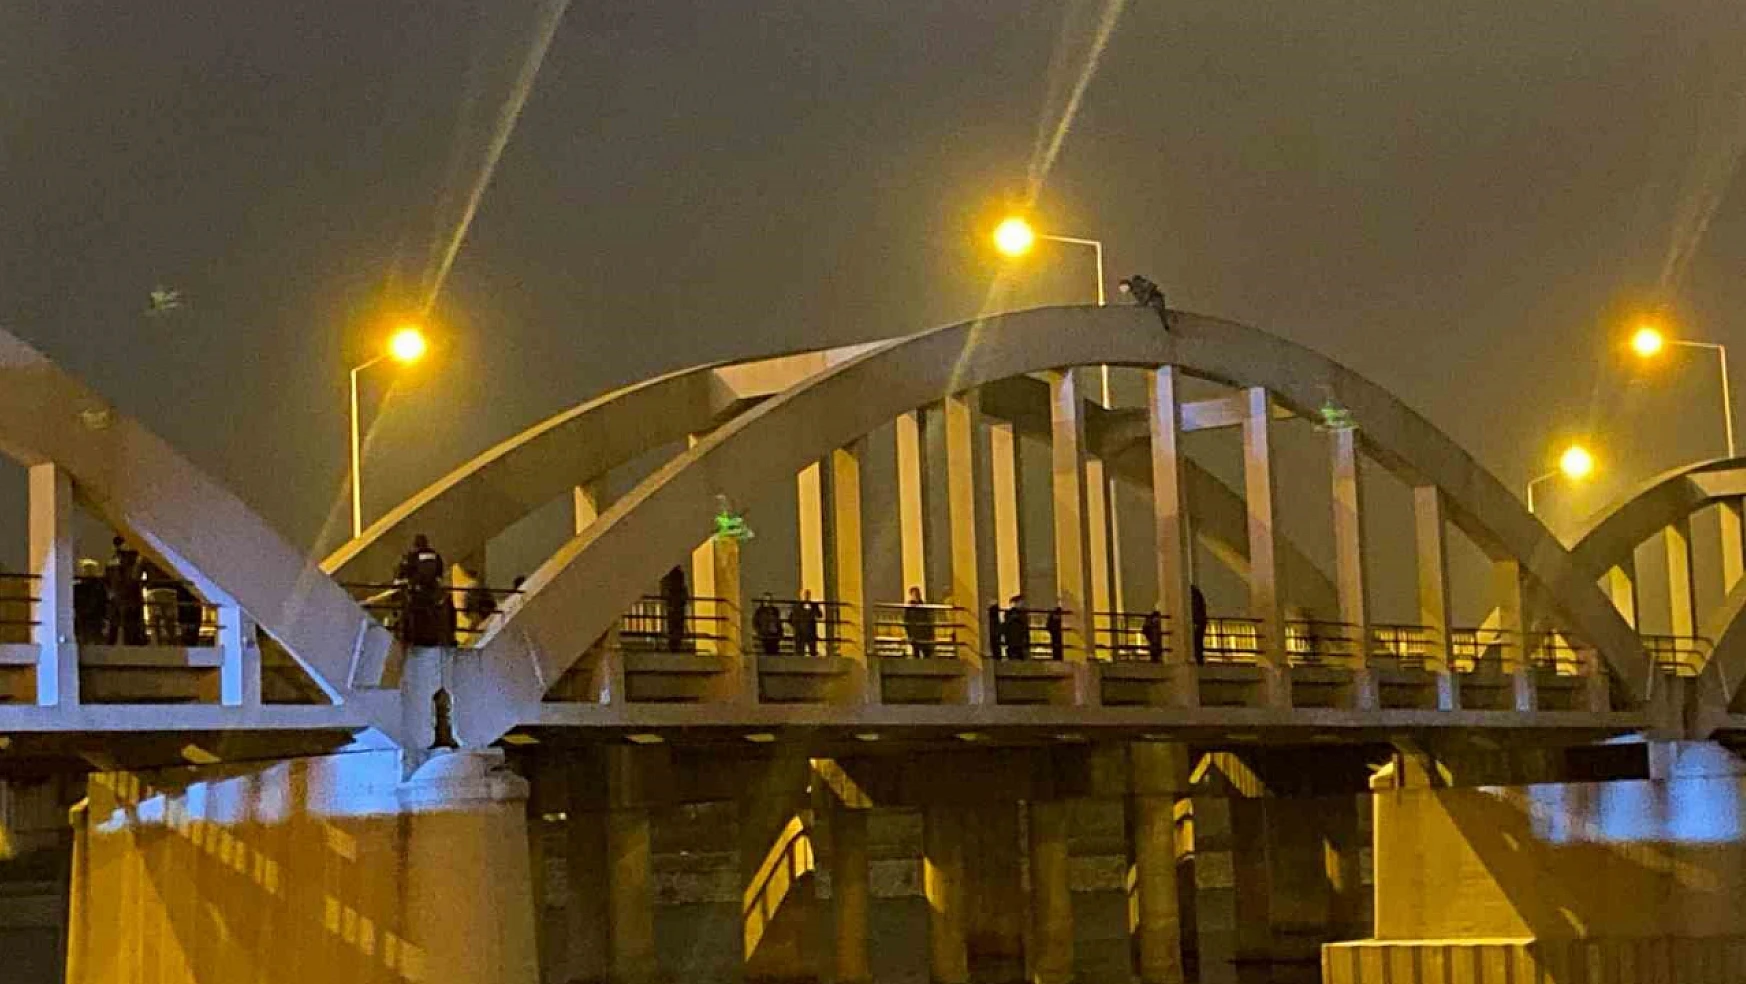 Köprüde intihar girişimi